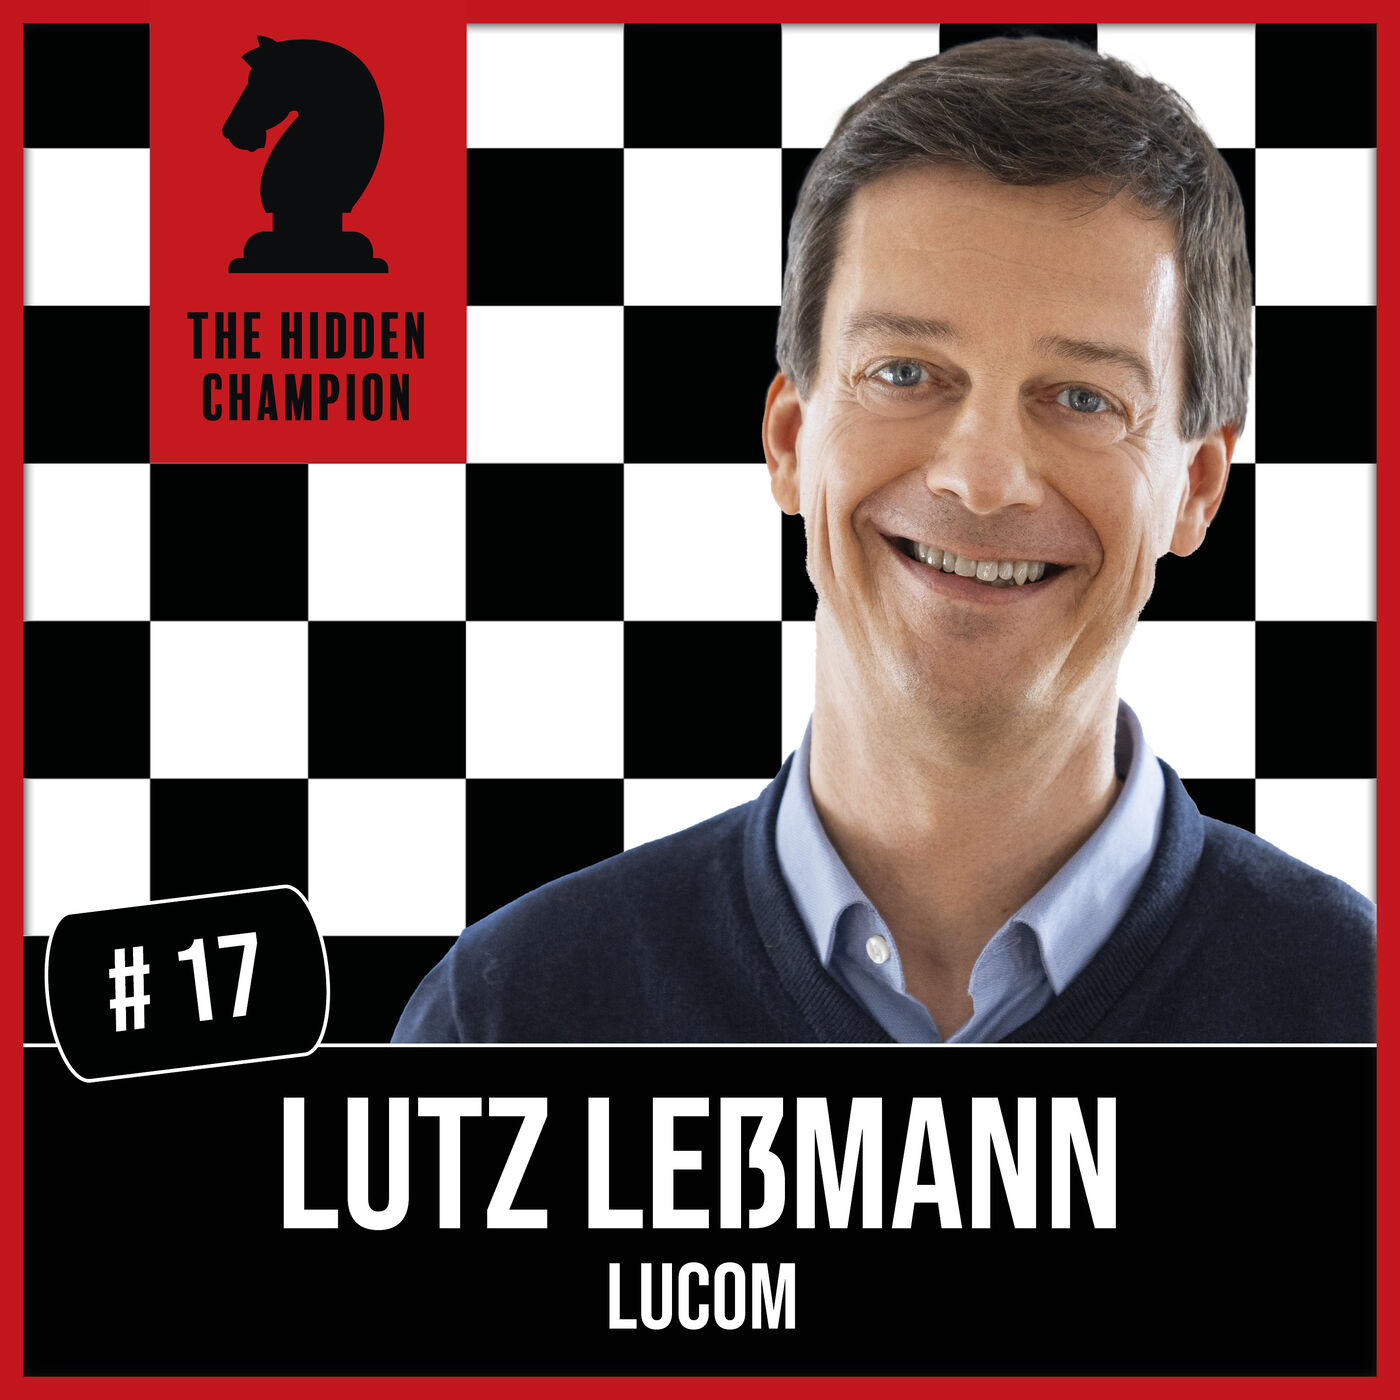 17. Keine Macht den Fehlern! Positive Energie ist bei Lutz Leßmann Garant des Erfolgs.